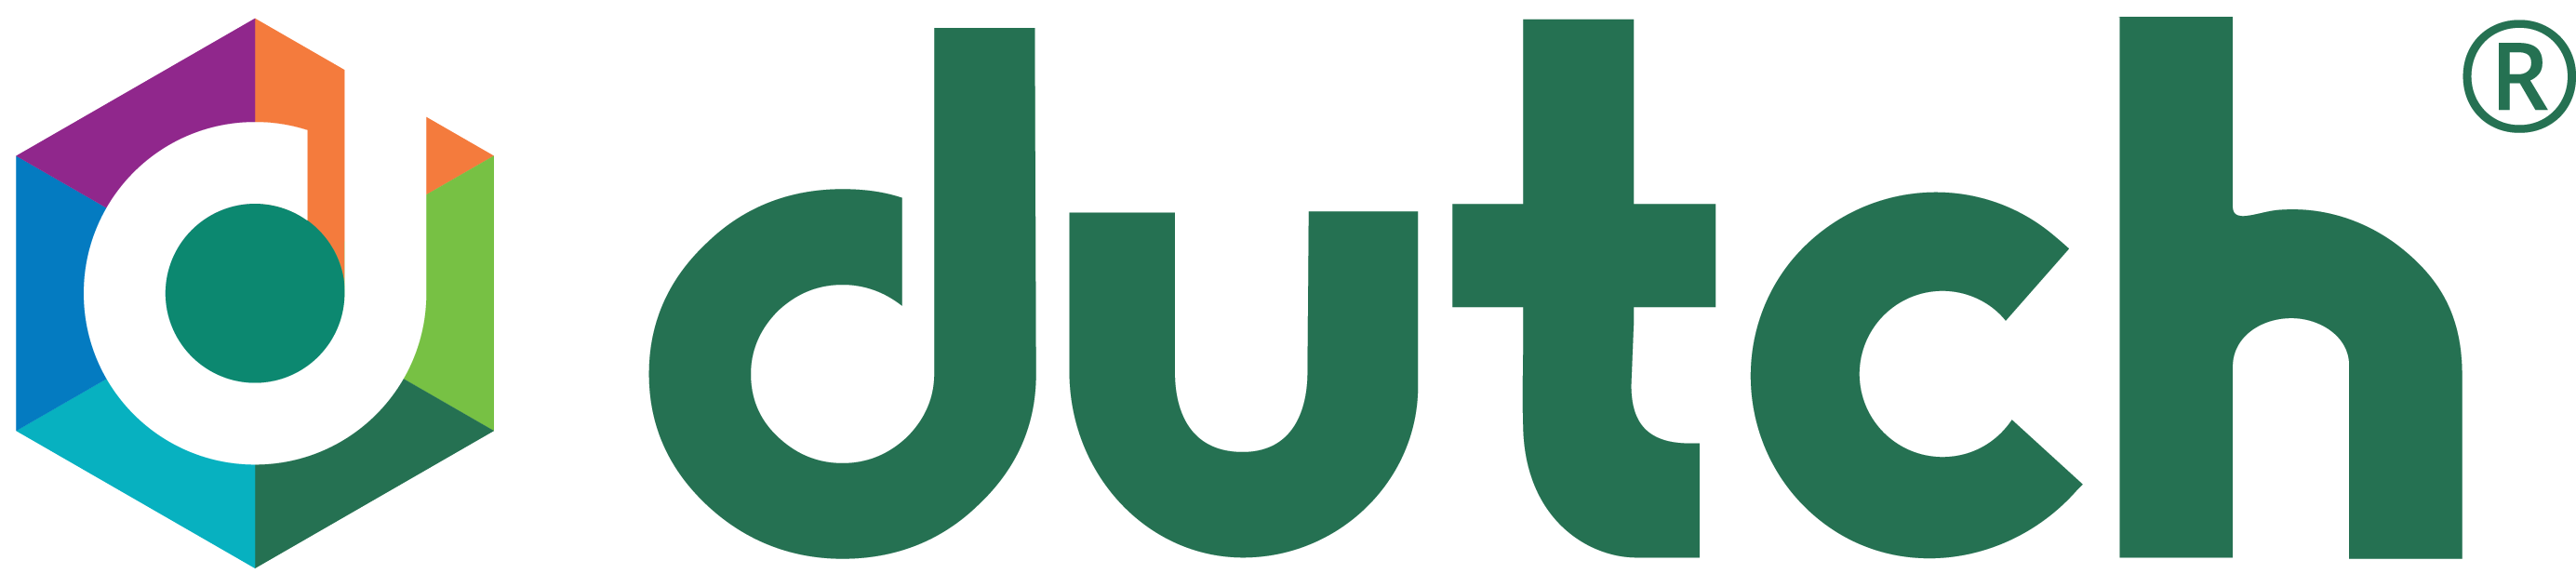 DUTCH Test Logo